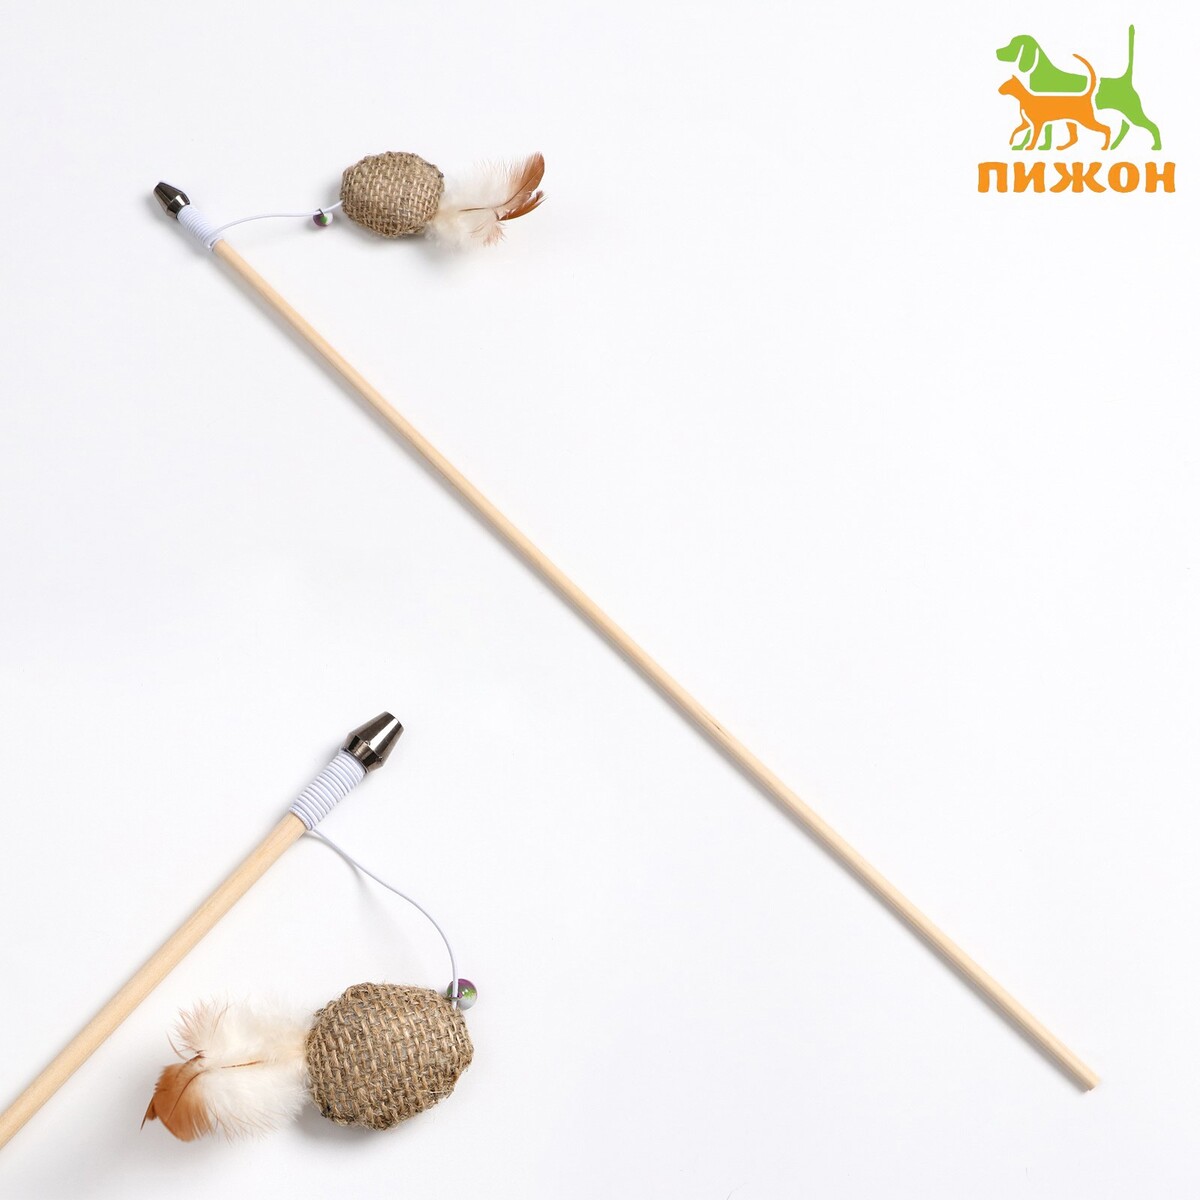 Дразнилка - удочка из эко-материалов дразнилка удочка с мягким шариком и перьями на деревянной ручке 40 см